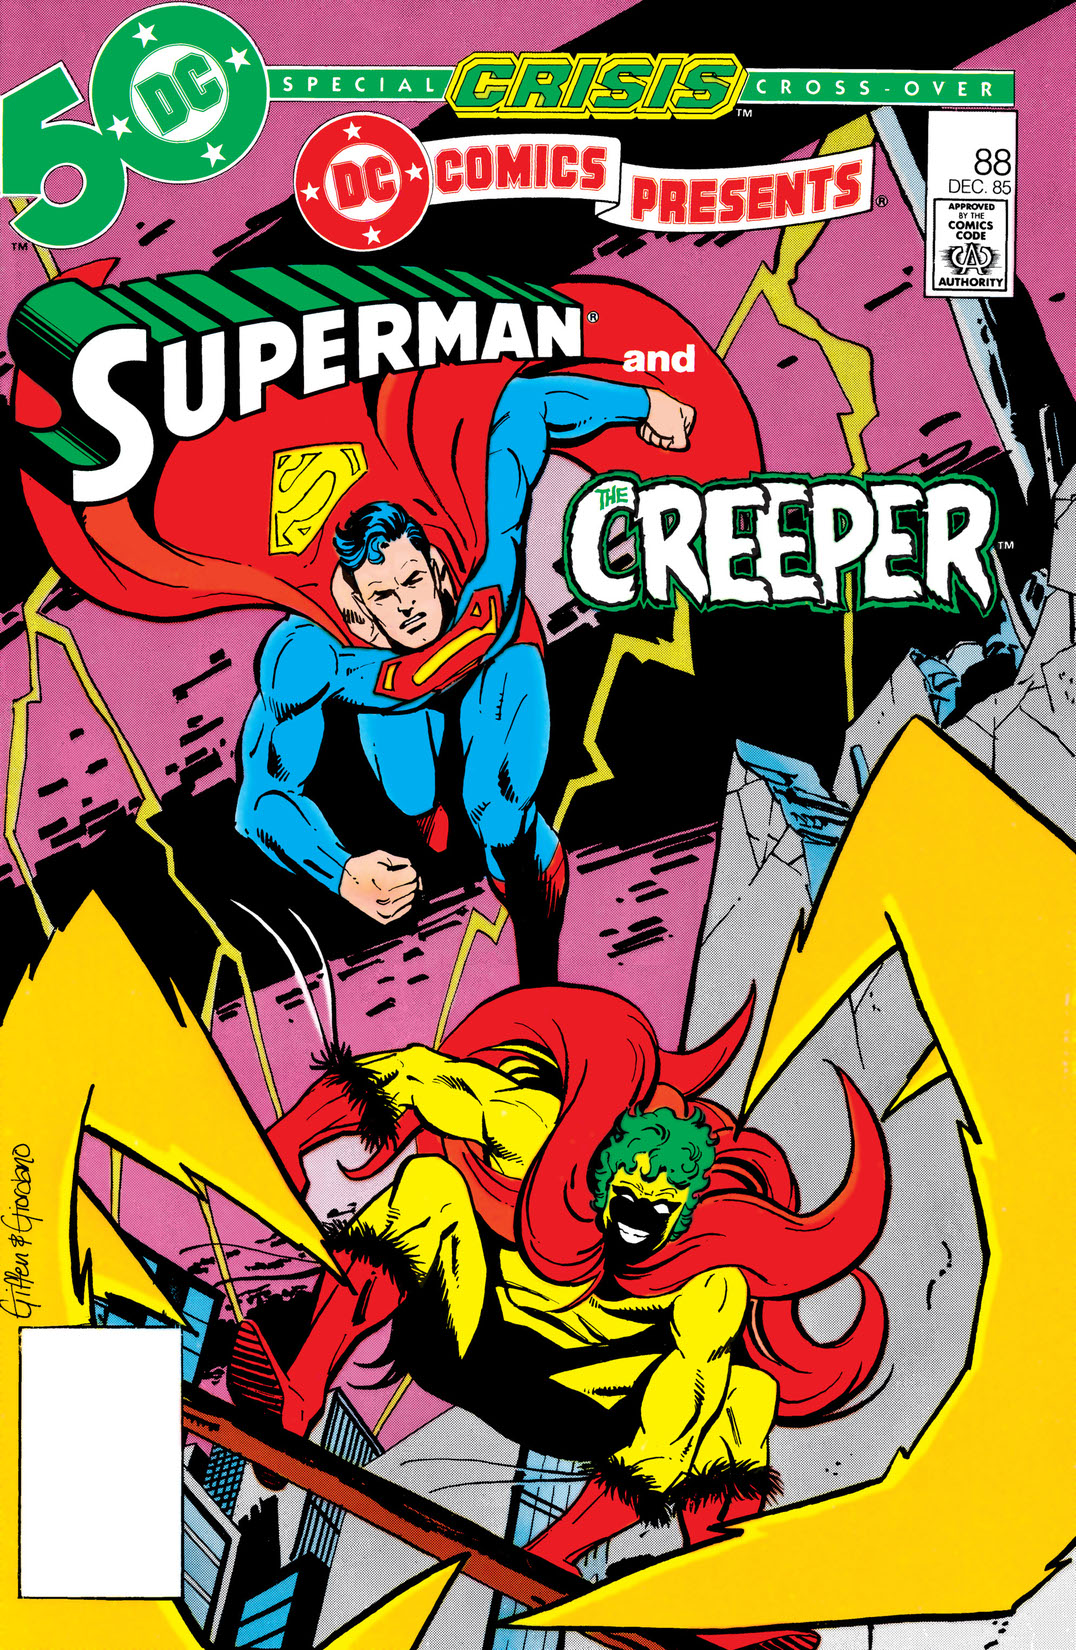 DC Comics Presents (1978-1986) #88 preview images